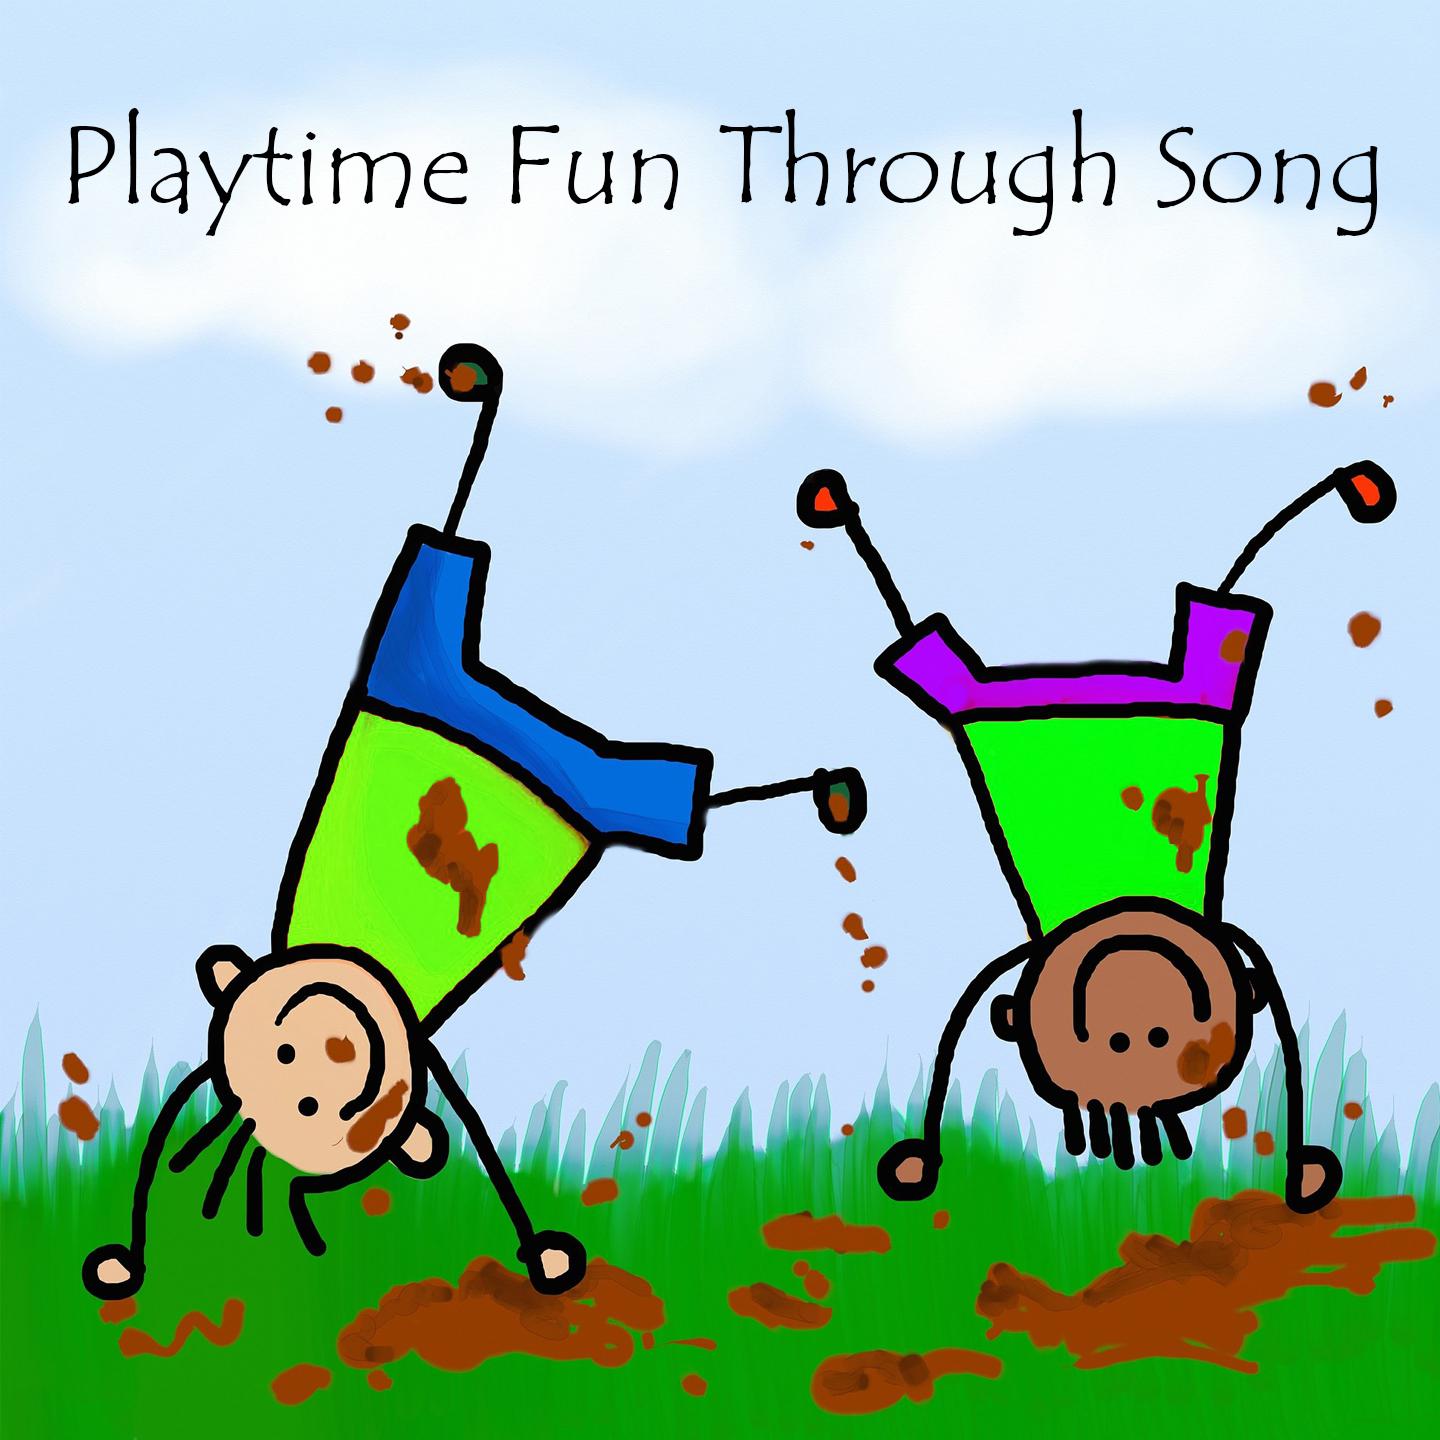 Playtime Fun Through Song